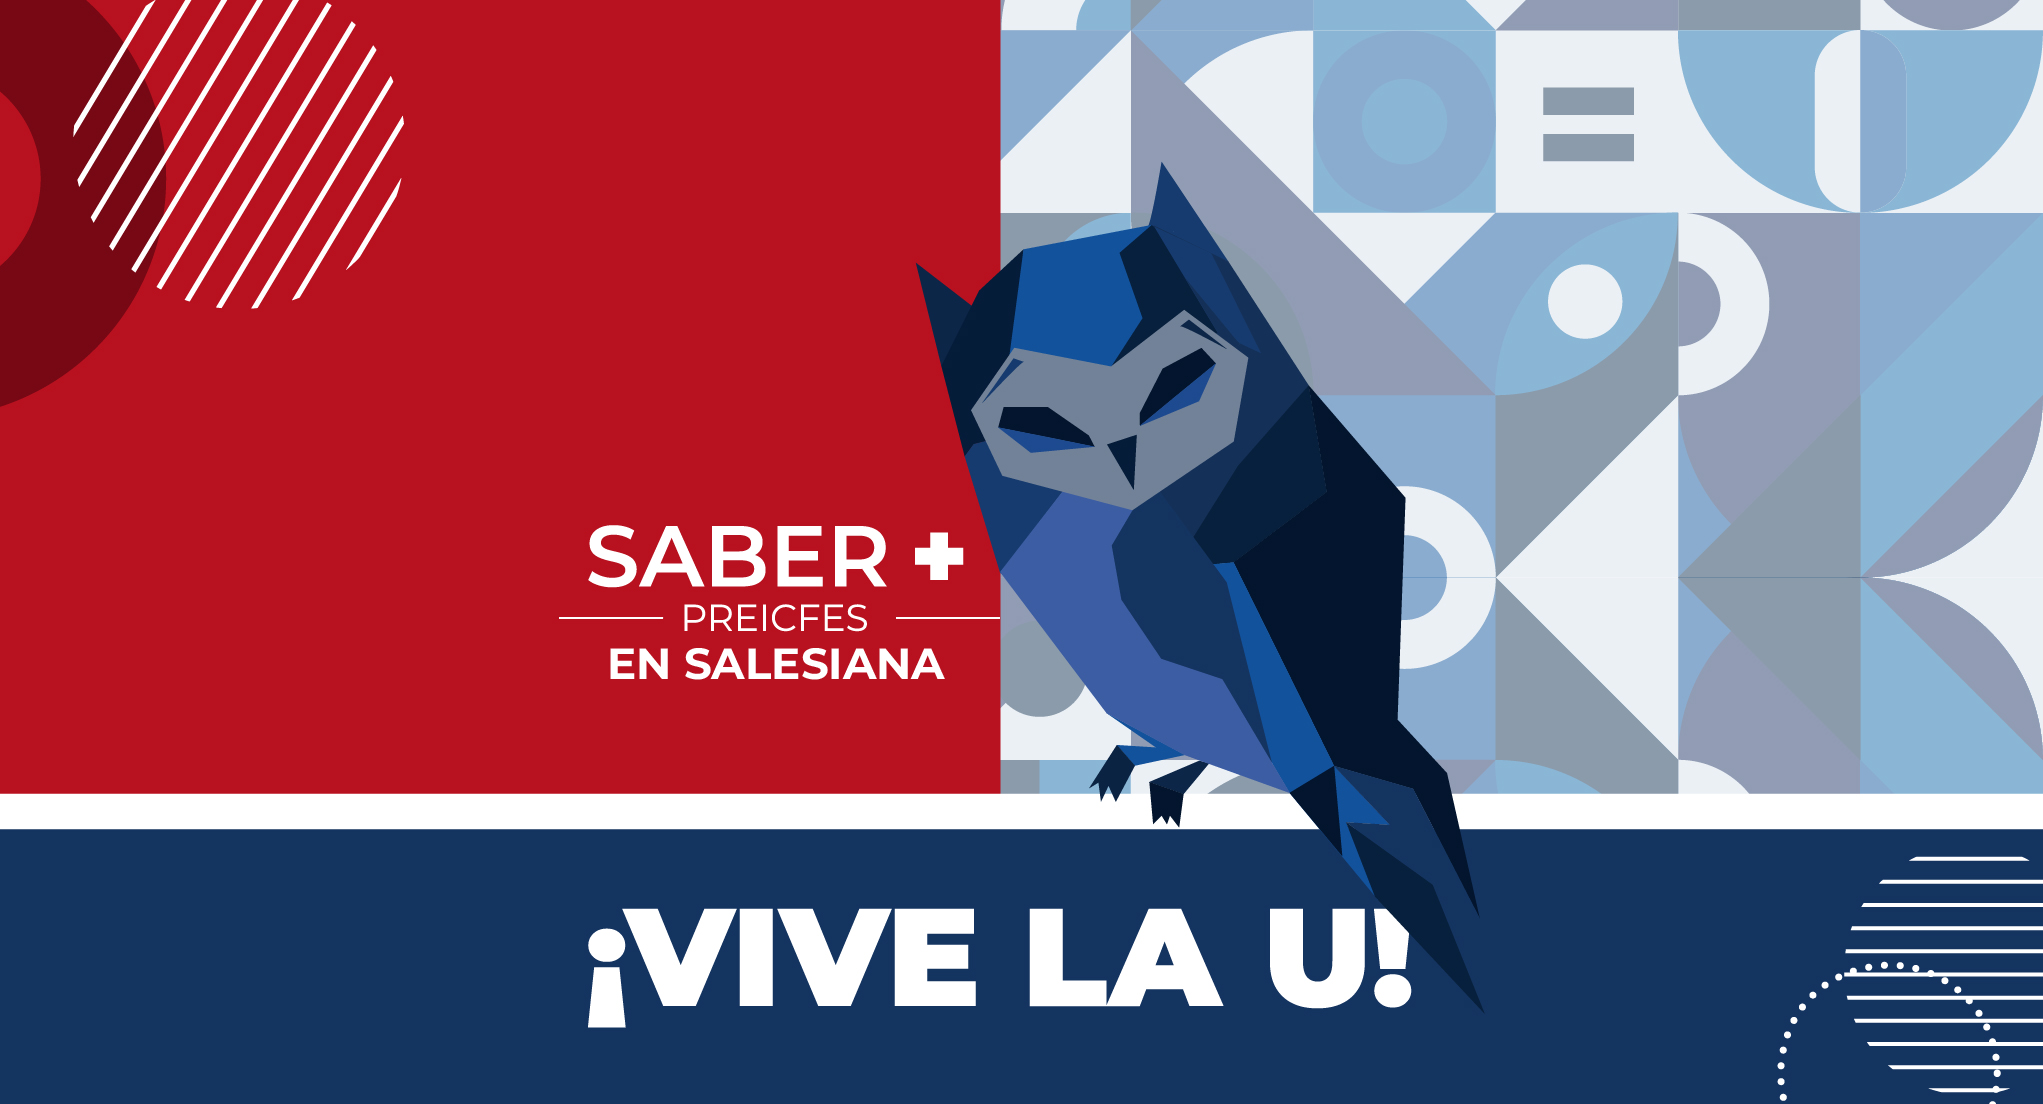 ¡VIVE LA U! SALESIANA ABRE PREICFES 34